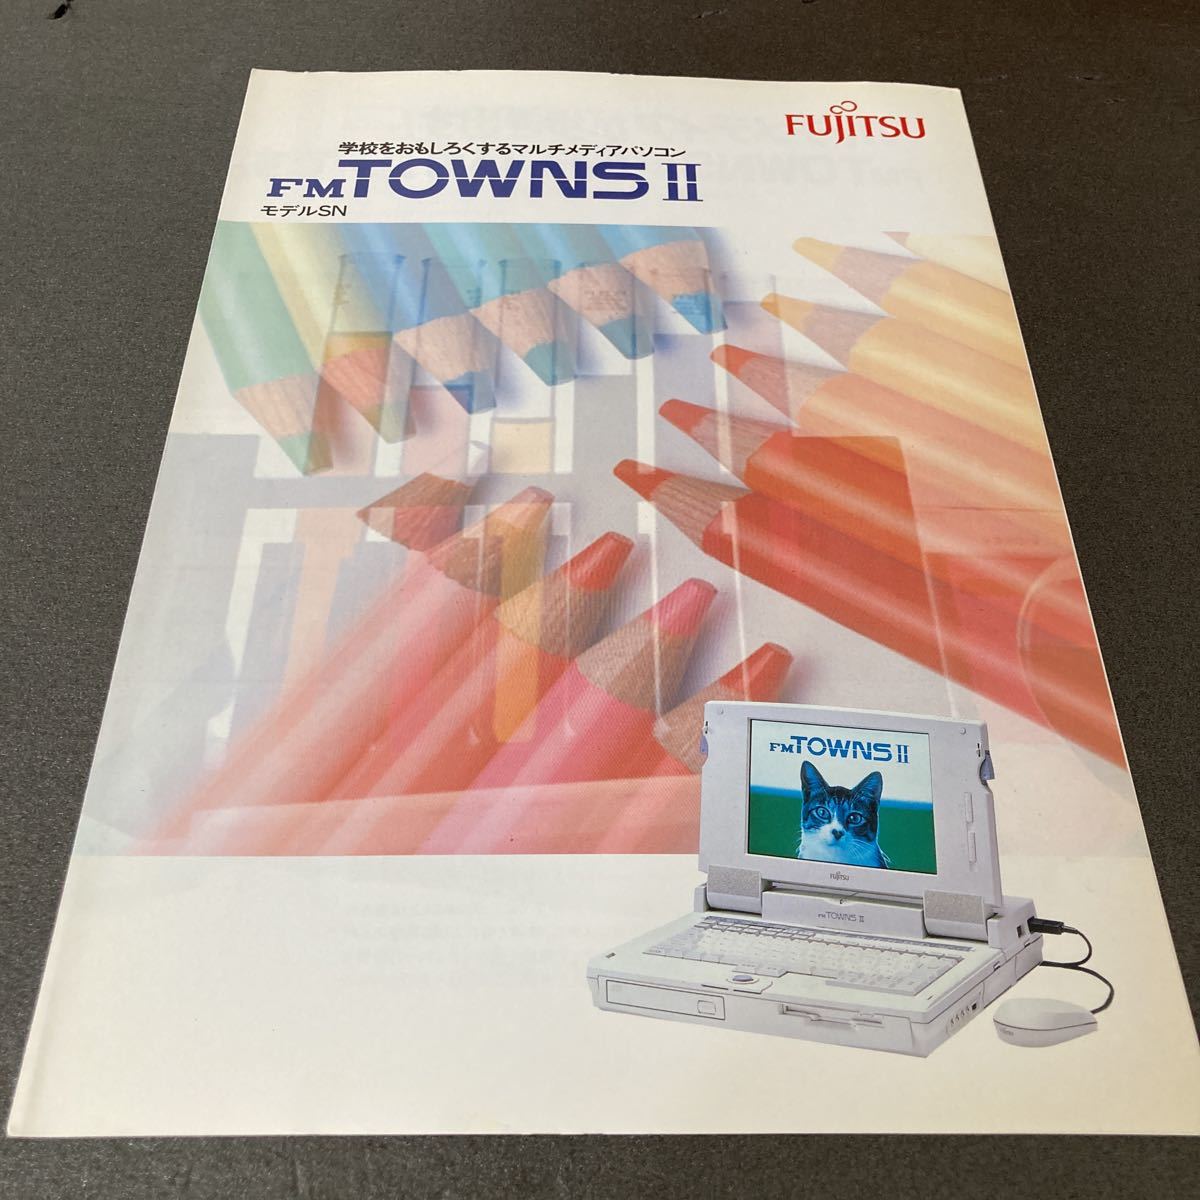  ценный : подлинная вещь (21): примерно 30 год передний каталог только. Note type FM-TOWNS модель SN бесплатная доставка Town z Fujitsu состояние. год число. сломан - чистый. 